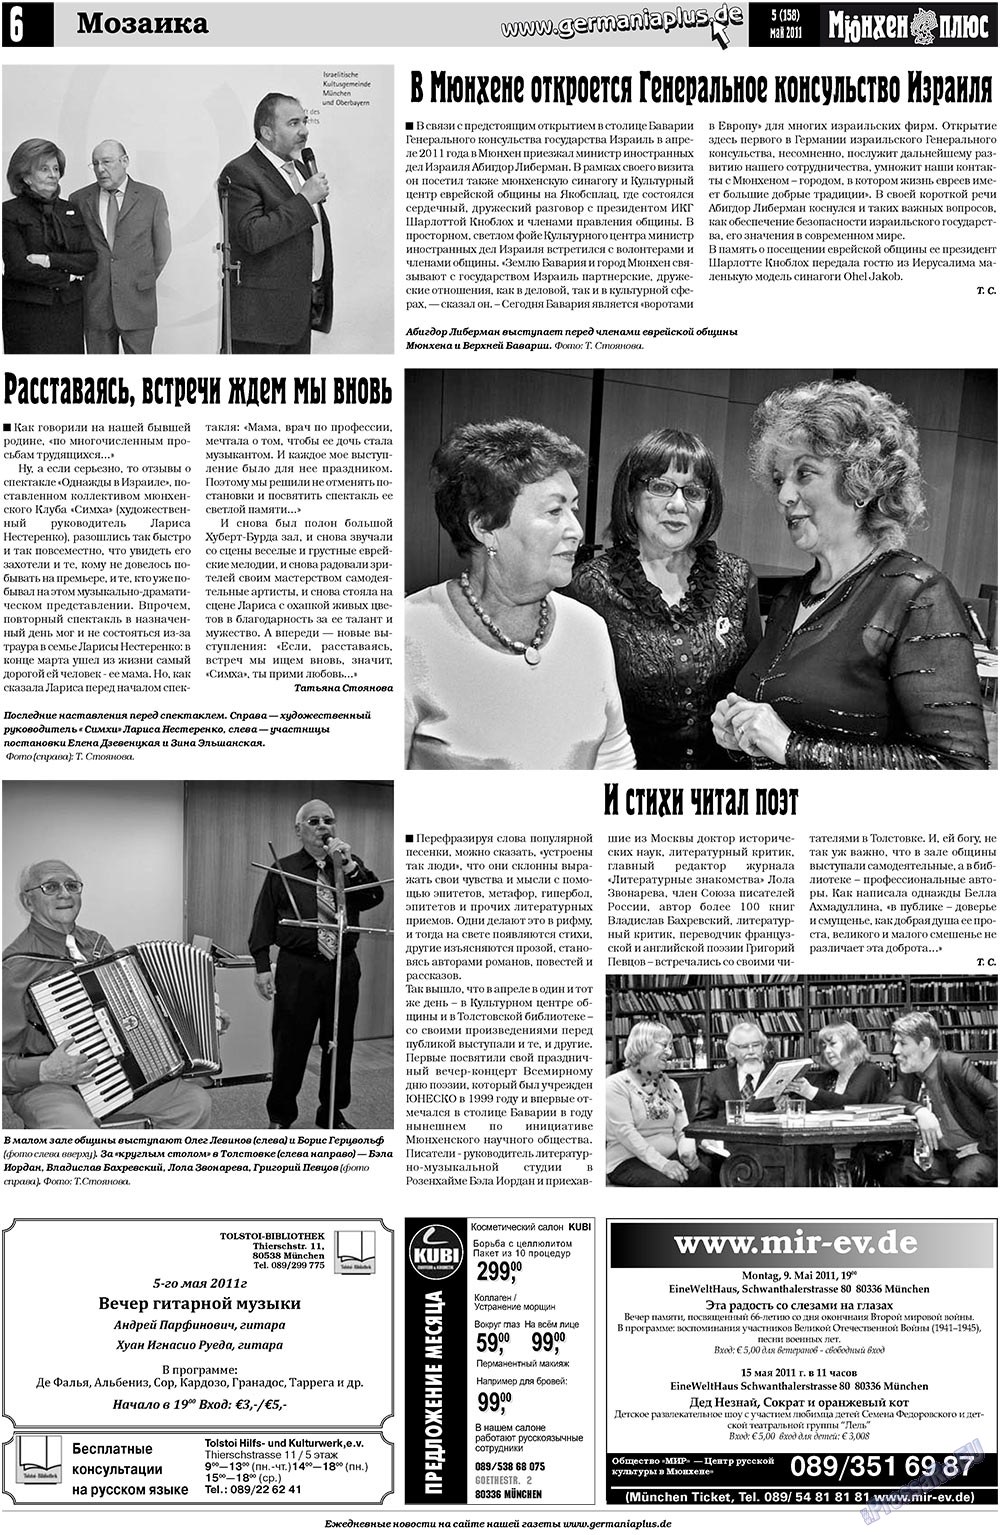 Германия плюс, газета. 2011 №5 стр.6